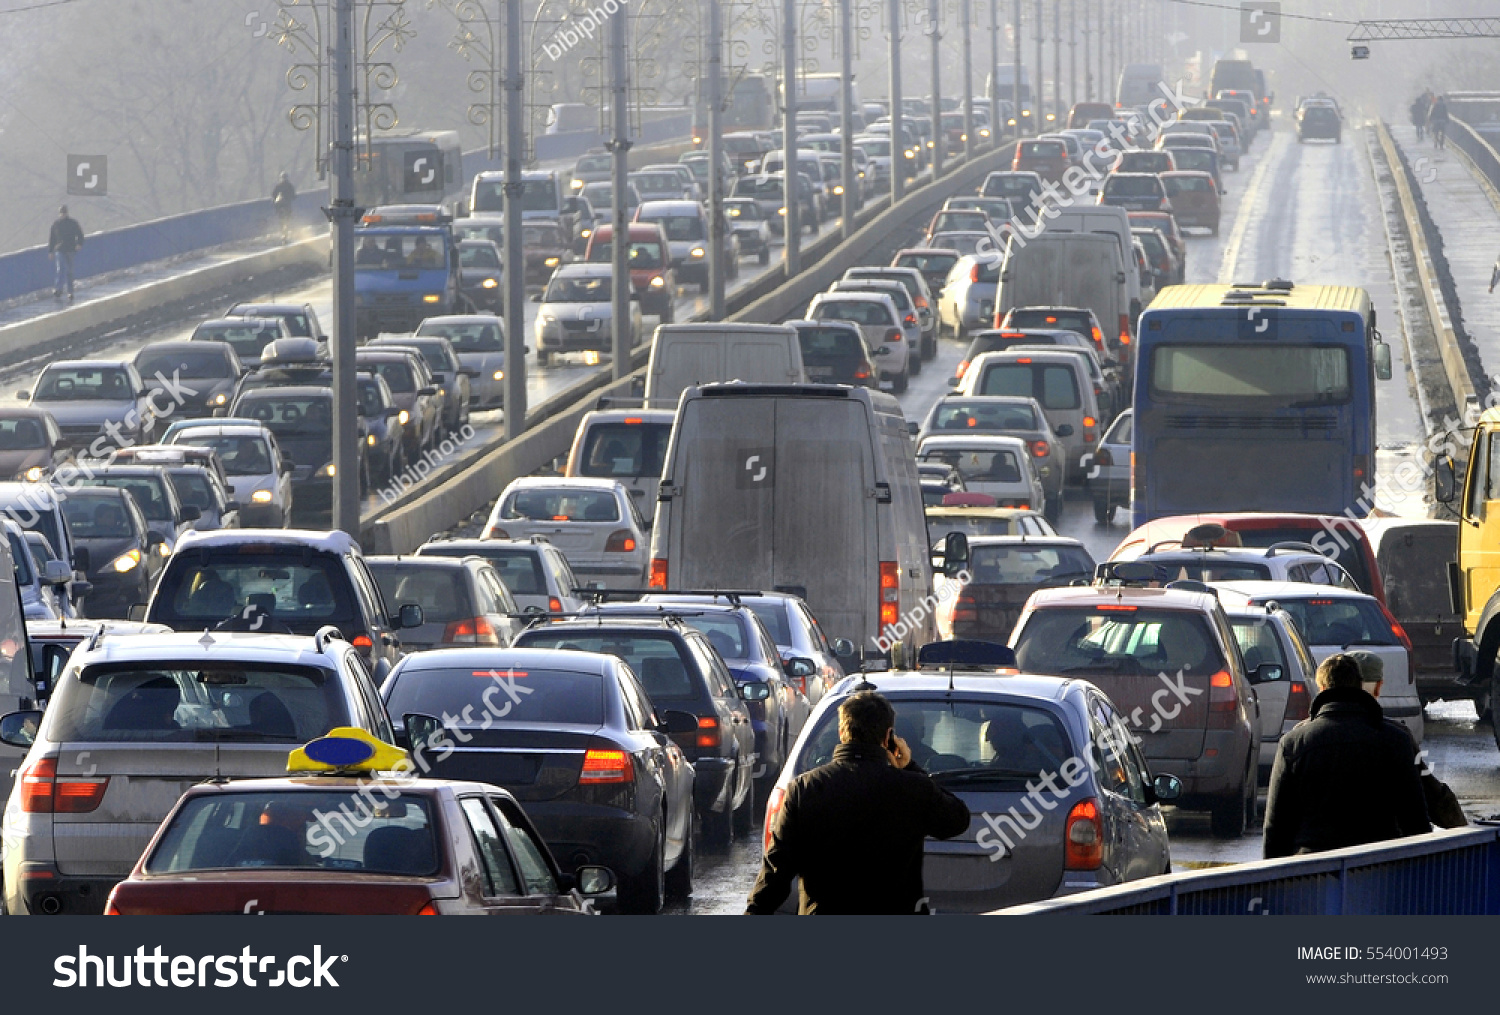 Traffic jam in the rush hour #554001493